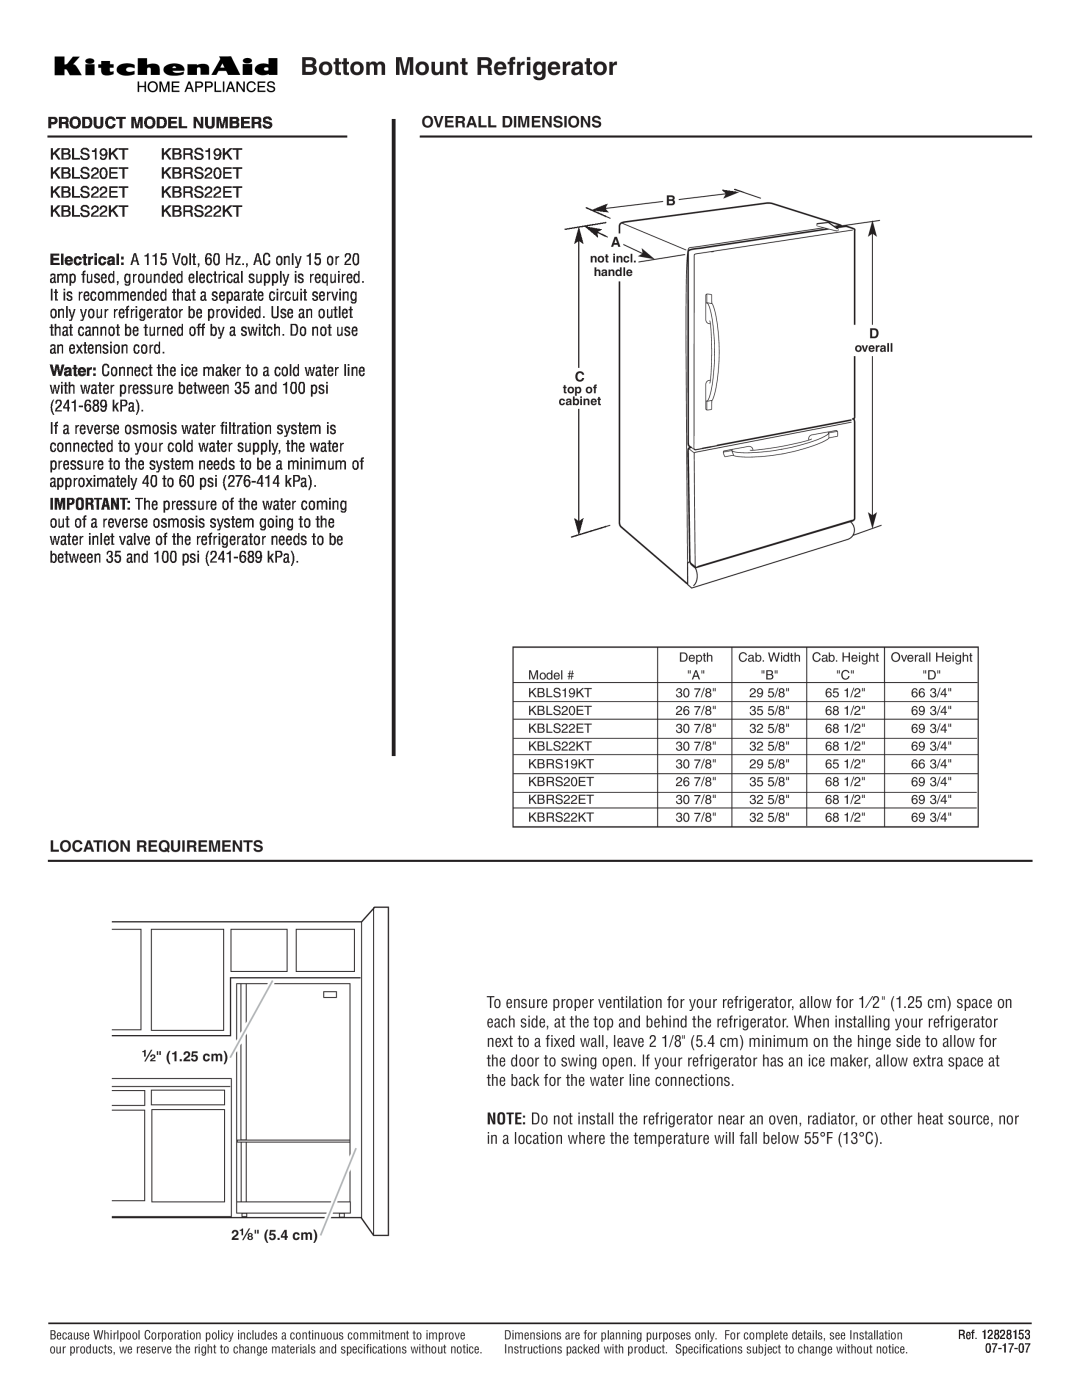 KitchenAid KBLS20ET dimensions Bottom Mount Refrigerator, Product Model Numbers, KBLS22KT KBRS22KT, Location Requirements 